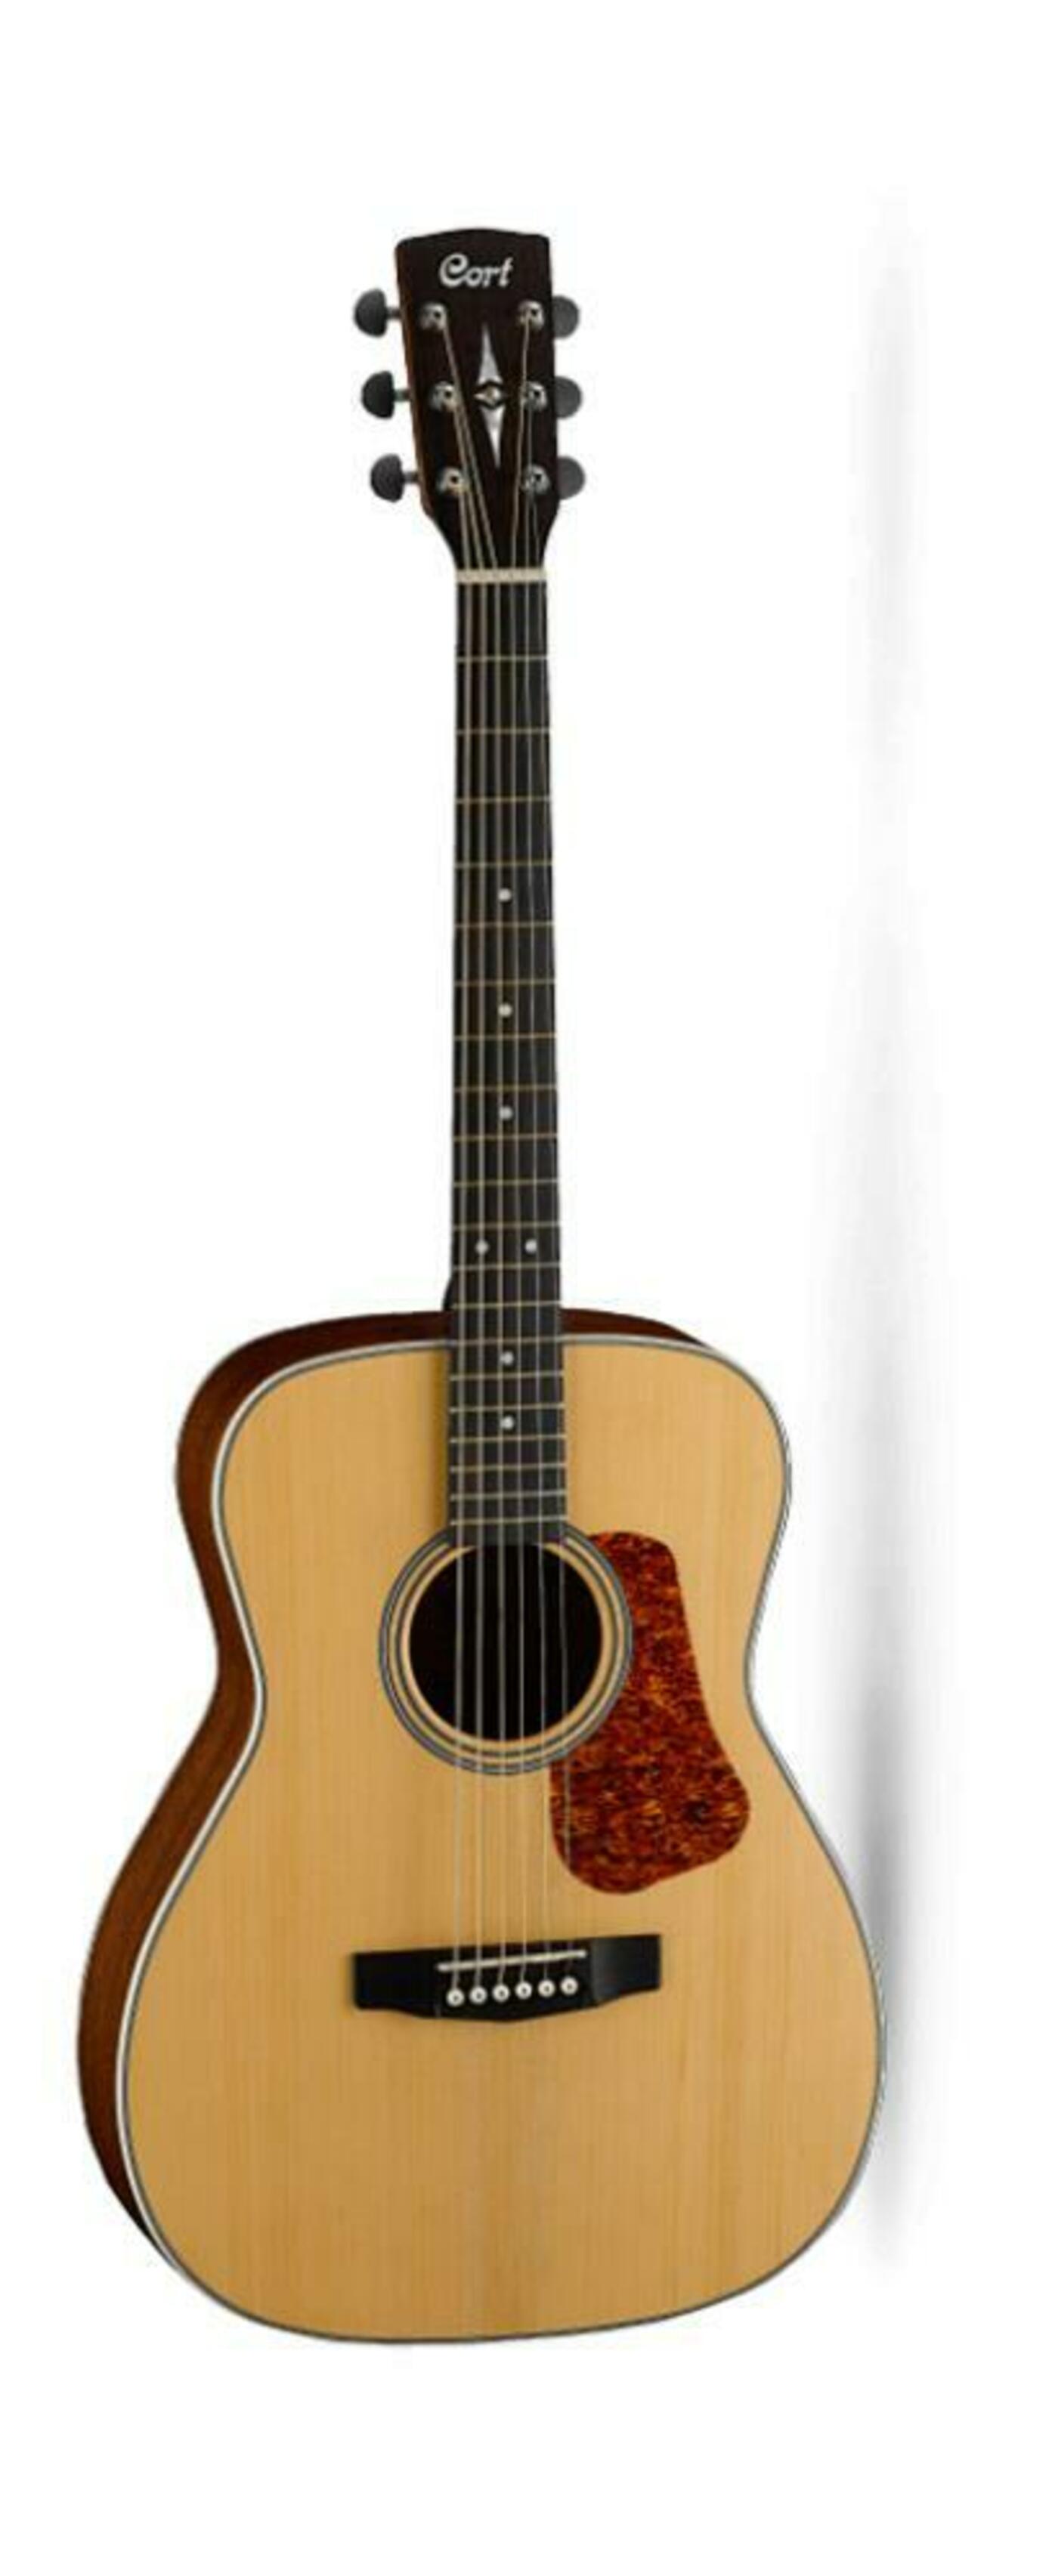 Акустические гитары Cort L100C-NS классические гитары ortega r121 family series чехол в комплекте